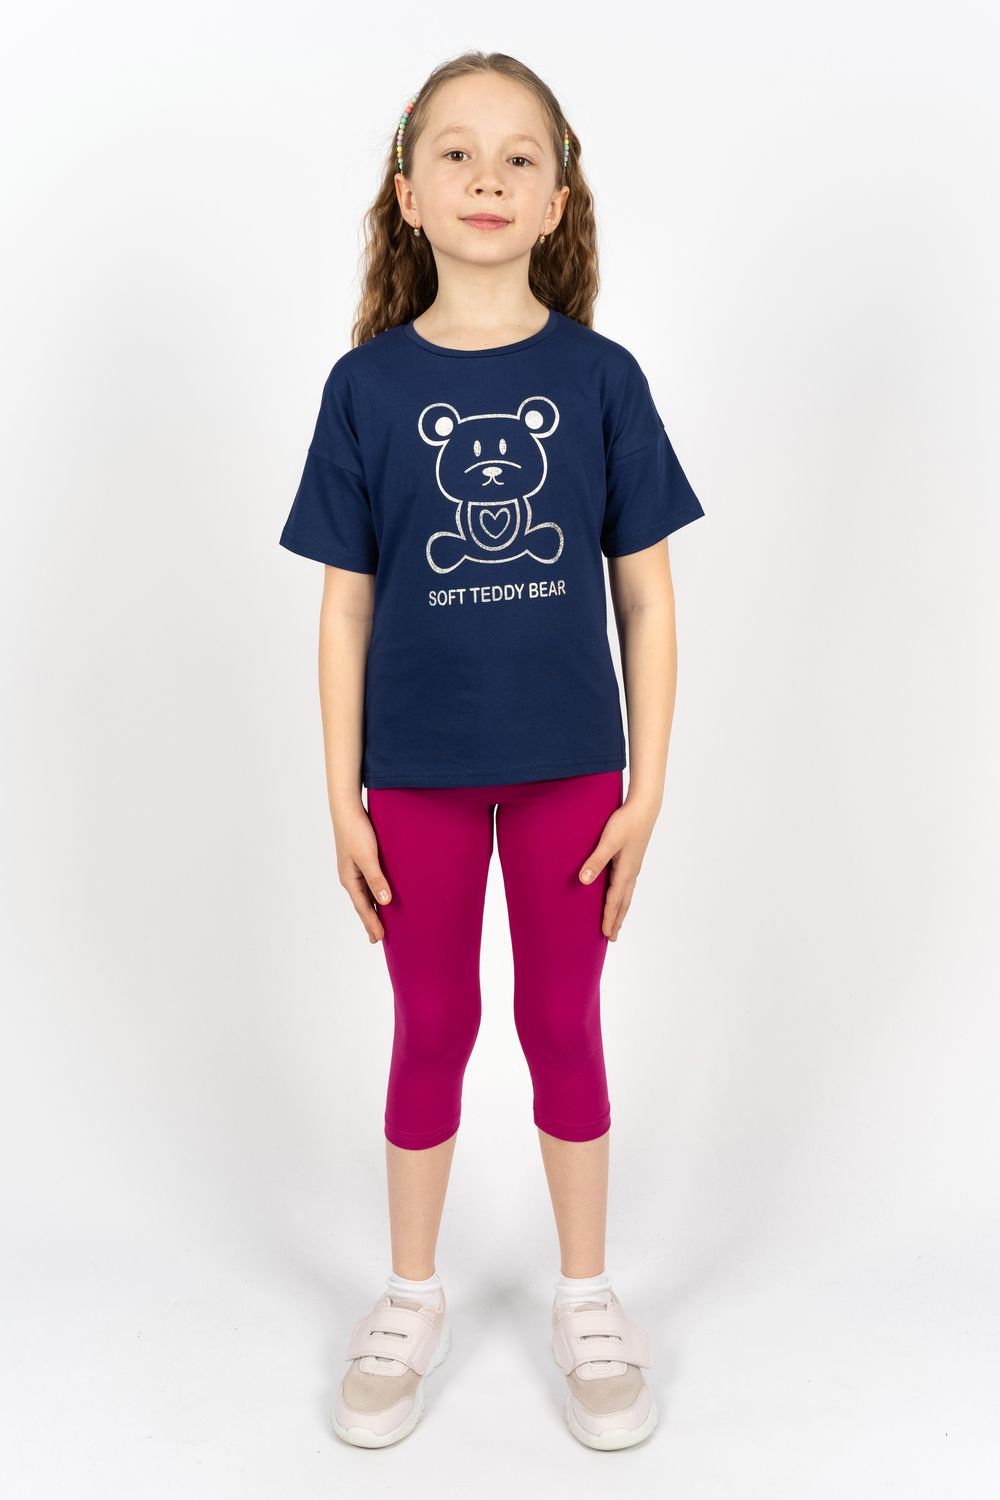 Комплект для девочки 41104 (футболка+бриджи) - синий/ягодный